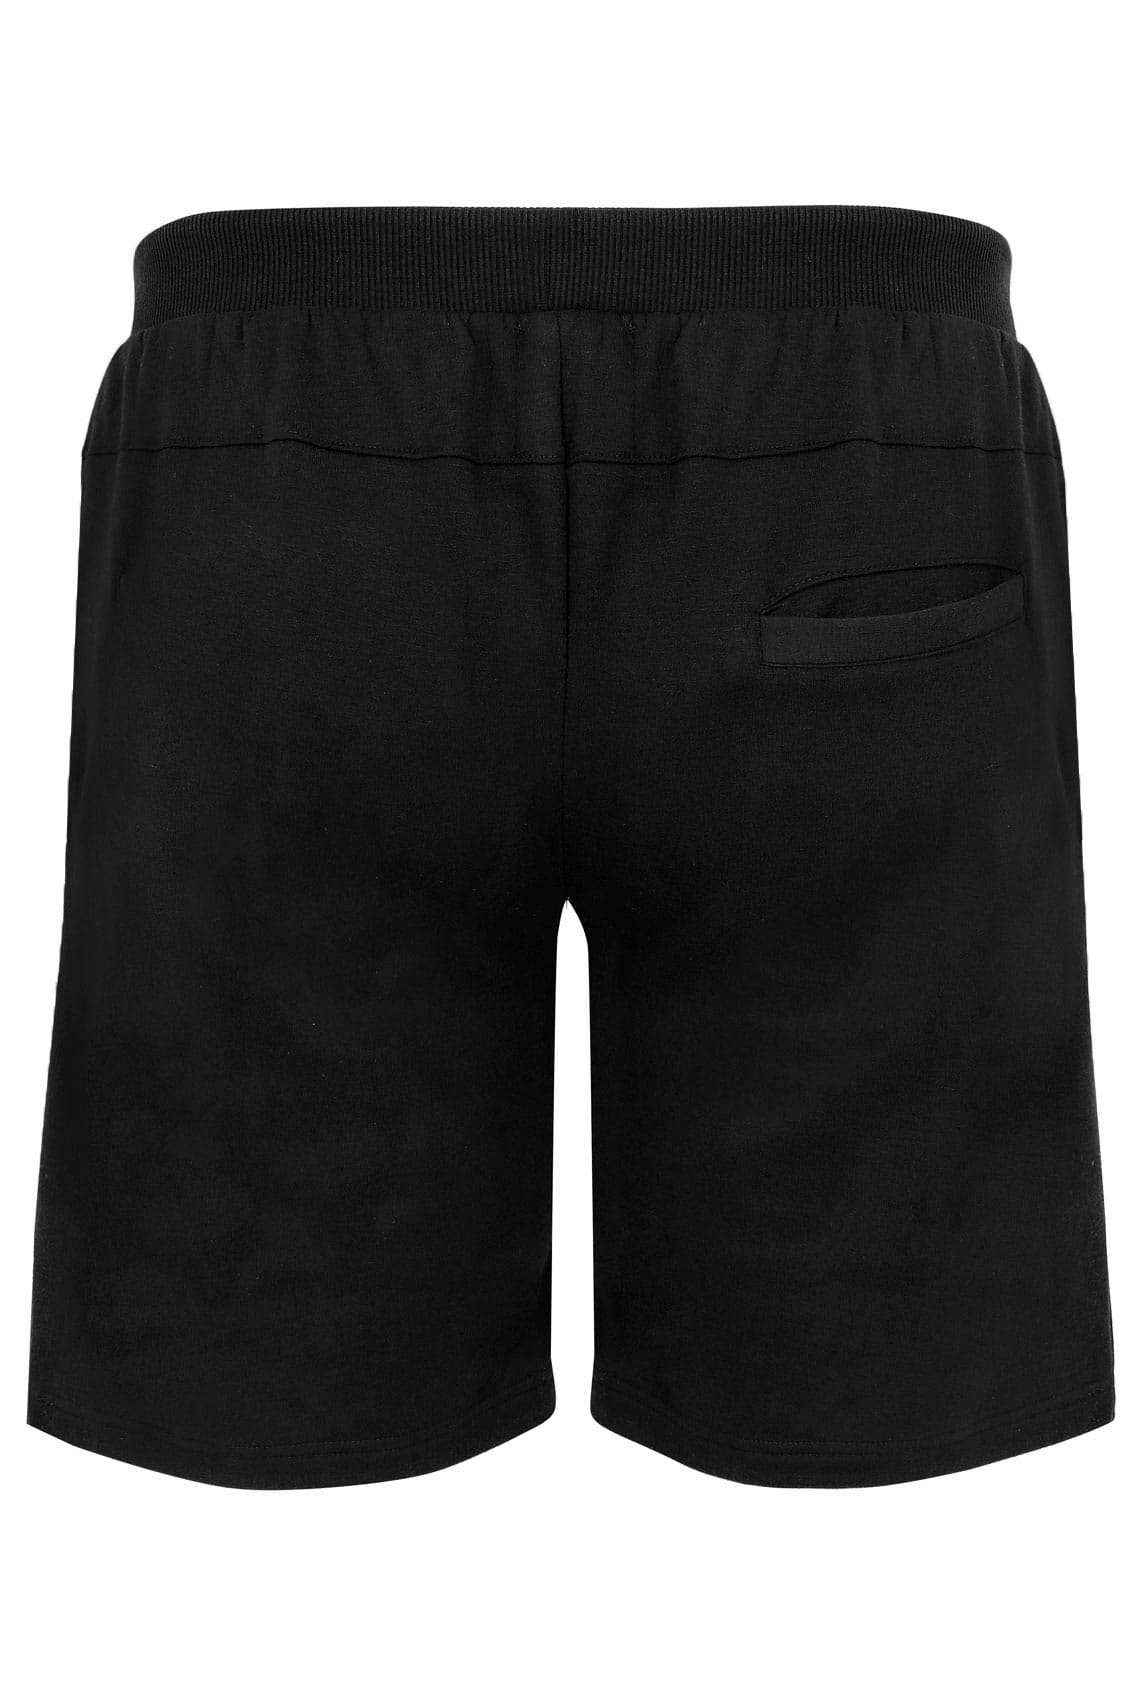 BadRhino Black Basic Sweat Shorts Extra Large Sizes L to 8XL